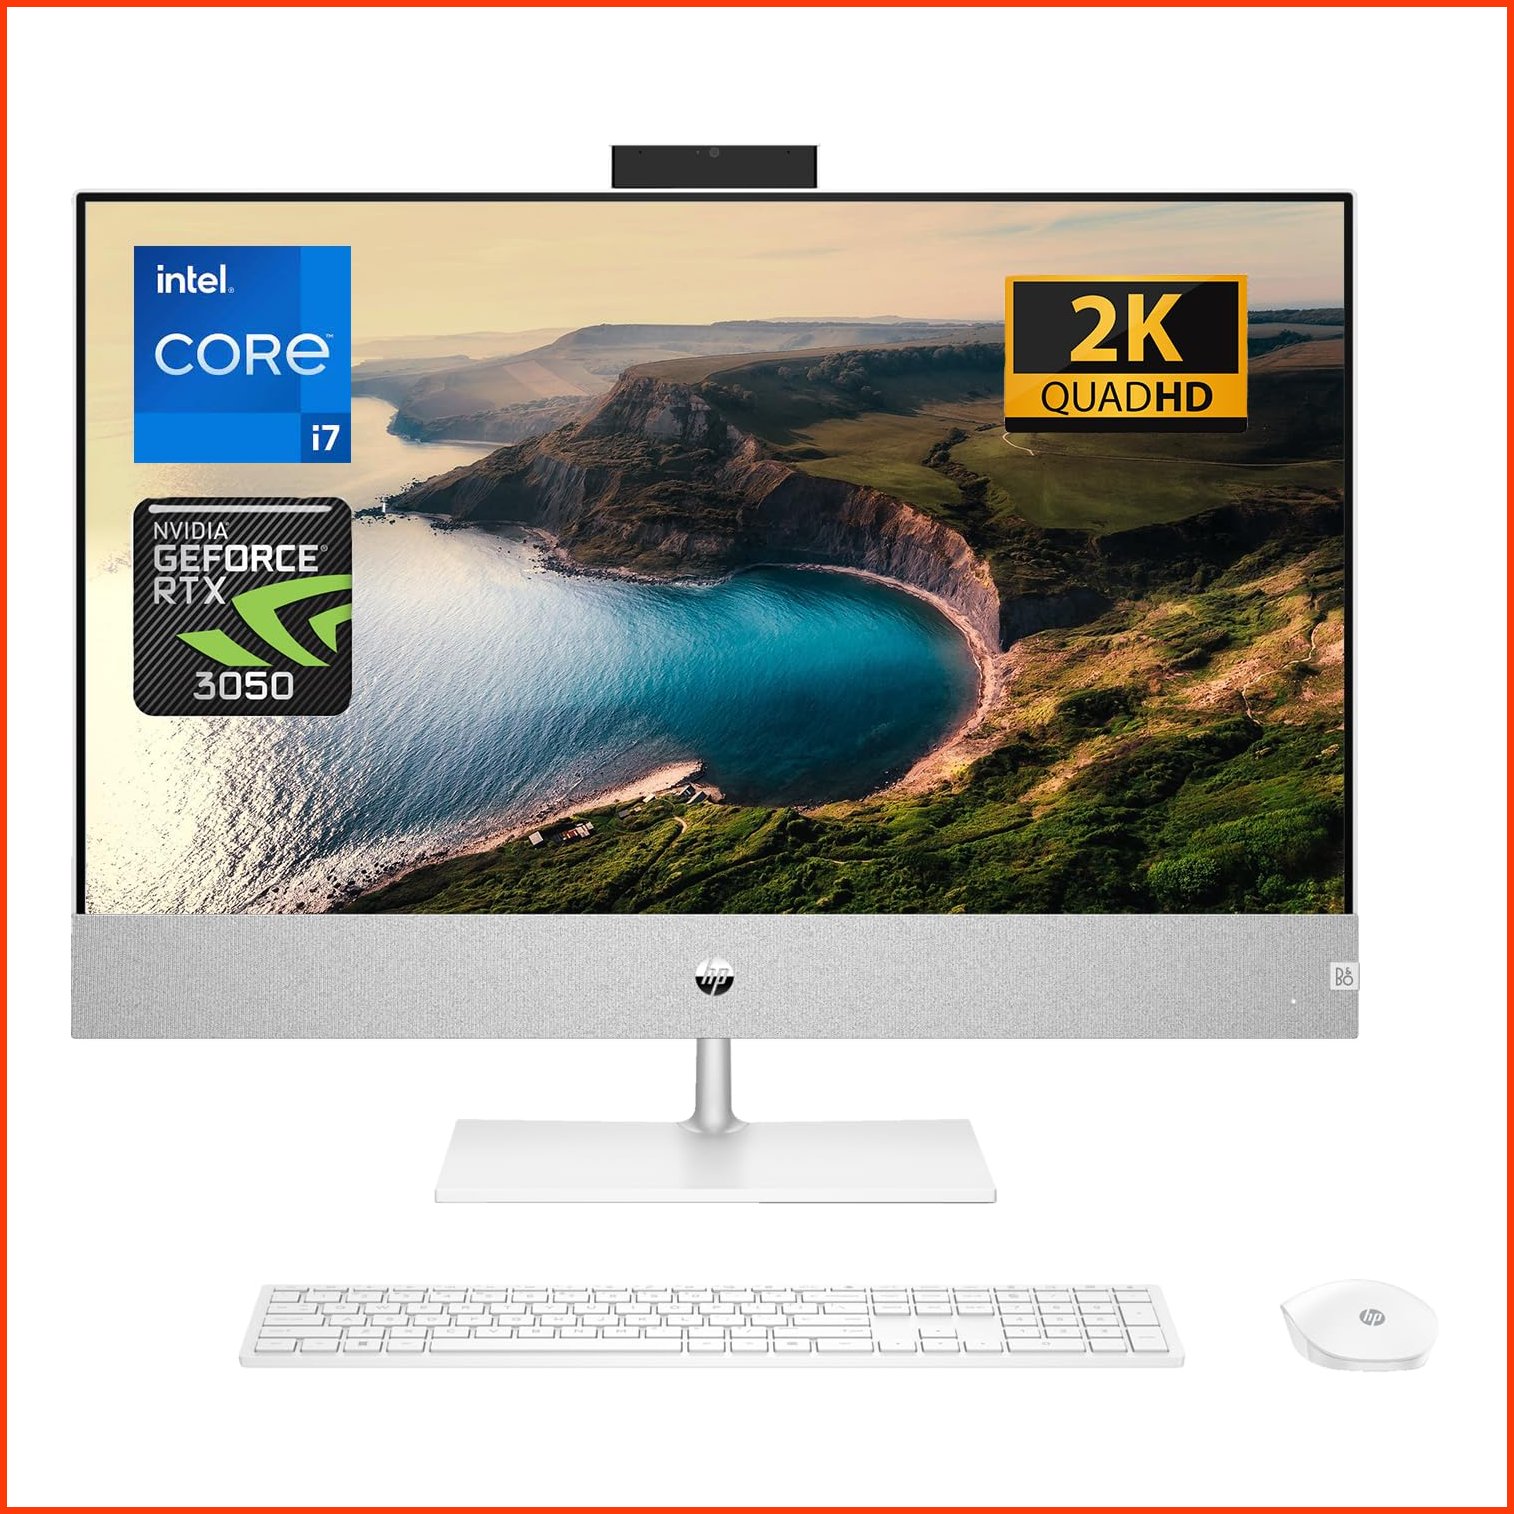 並行輸入品HP Pavilion 27 QHD All-in-One Intel Core i7-13700T NVIDIA GeForce RTX 3050 32GB RAM 2TB SSD IR Camera W